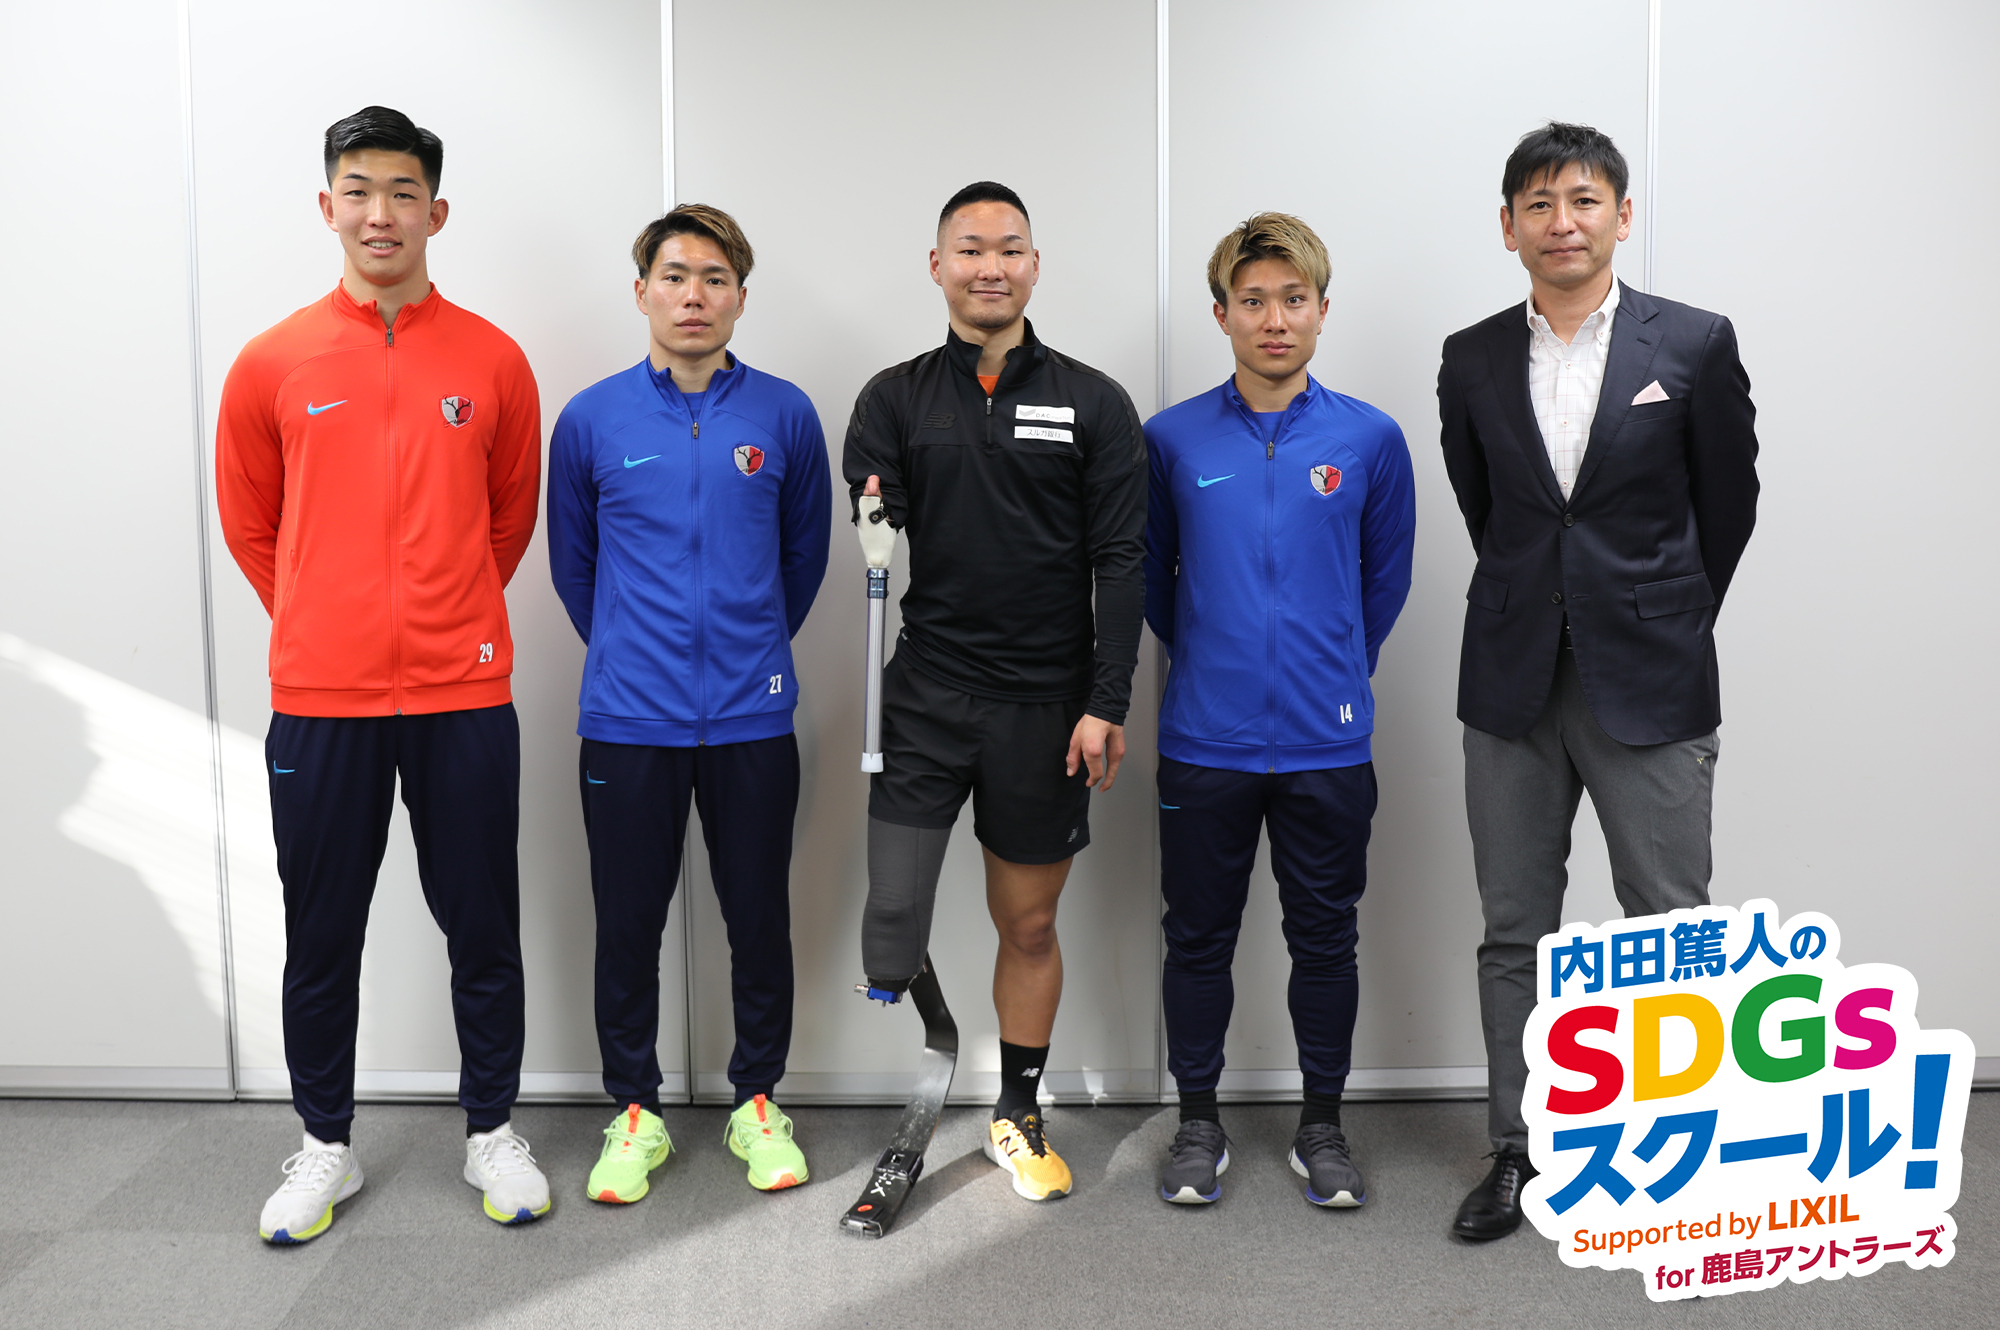 内田篤人さんからのミッションは“多様性への理解” 鹿島アントラーズの選手たちがスポーツ義足体験でSDGsを学ぶ サムネイル画像